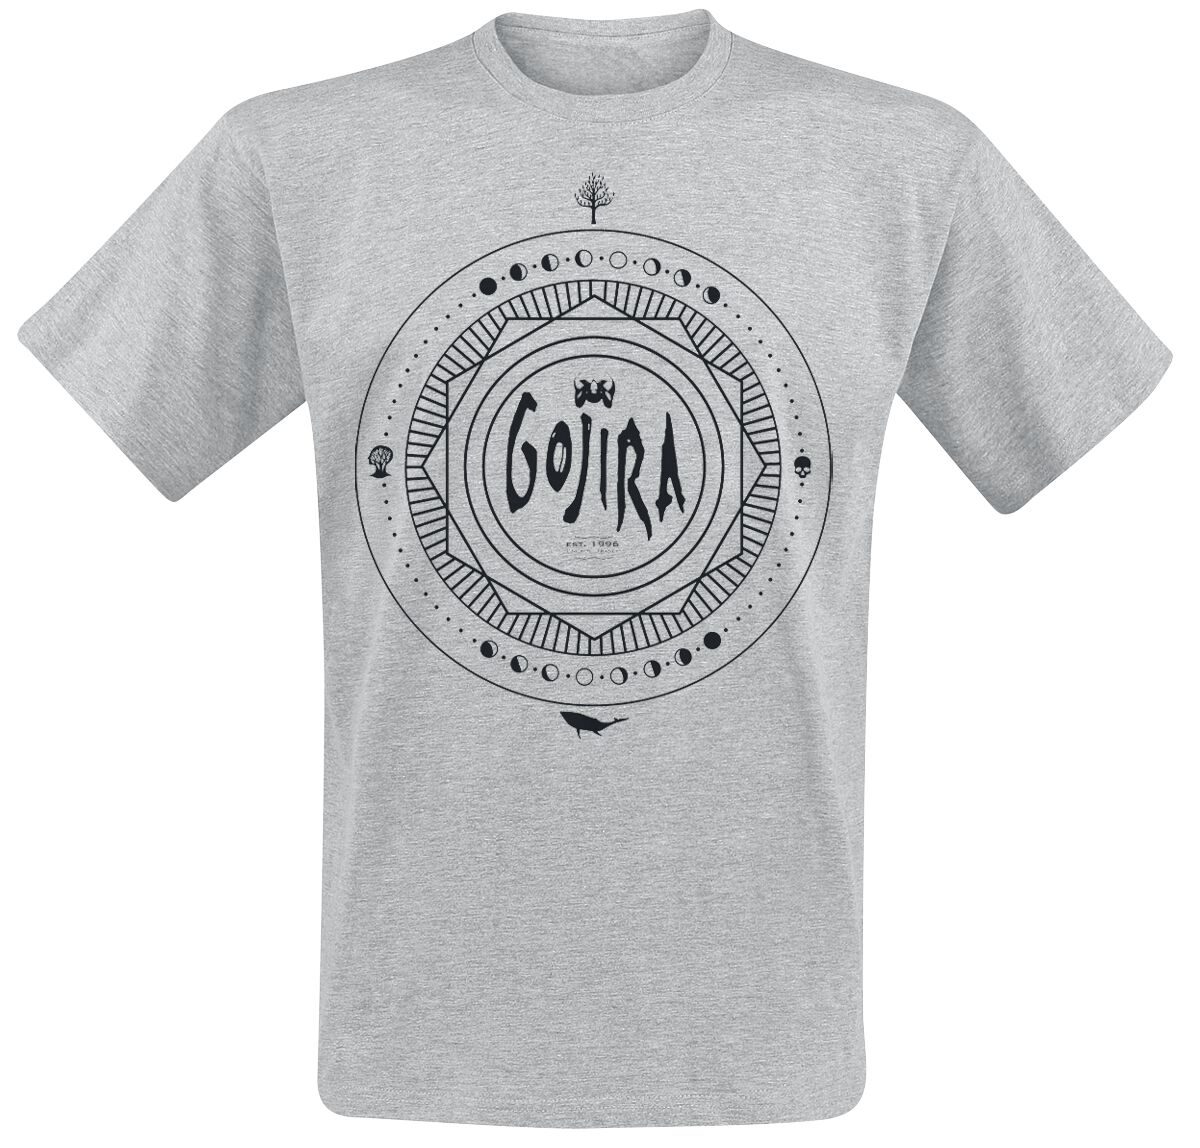 Gojira T-Shirt - Moon Phases - S bis XL - für Männer - Größe S - grau meliert  - Lizenziertes Merchandise!